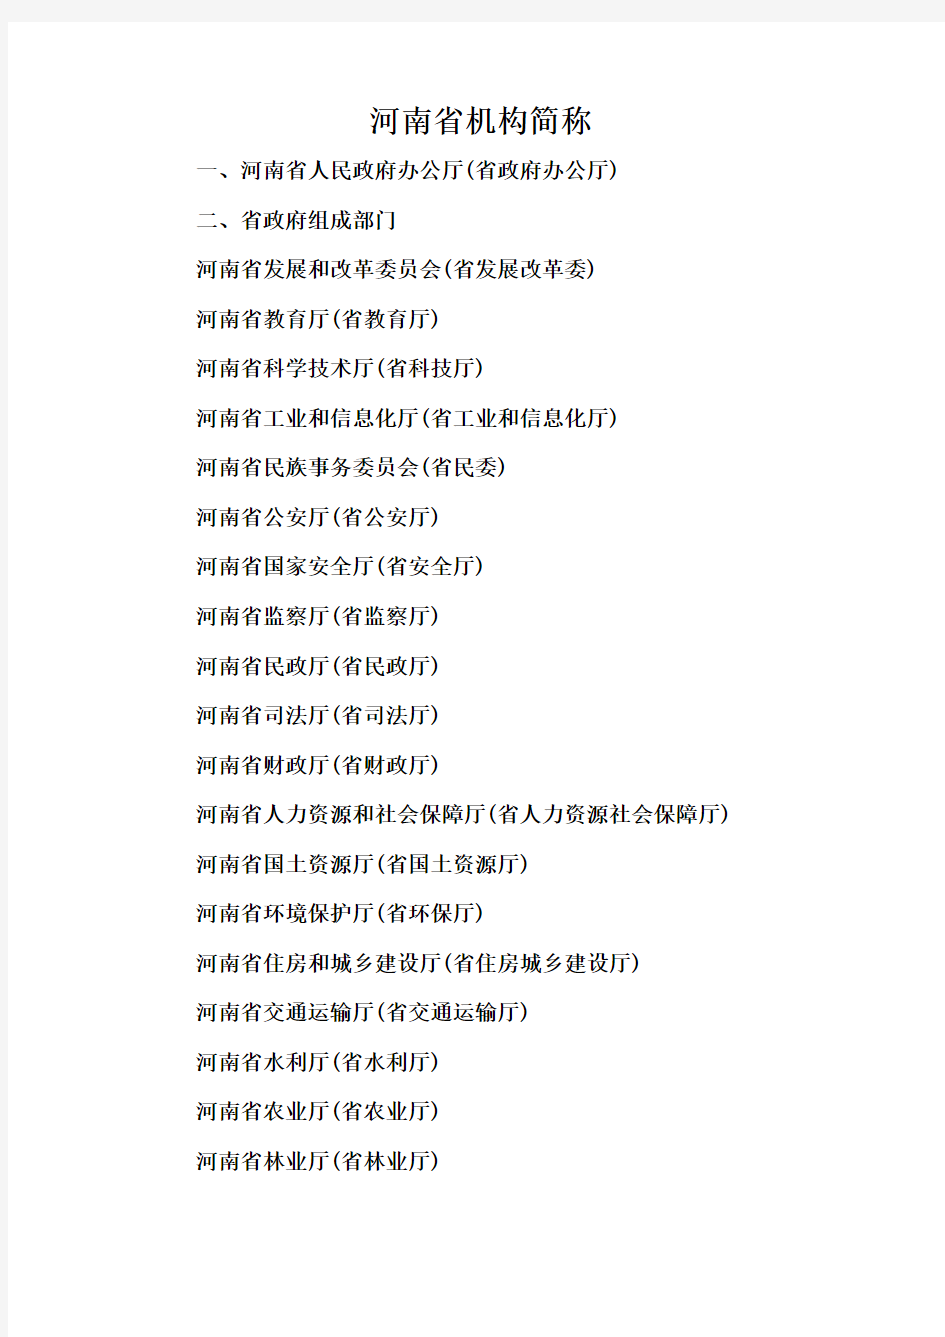 河南省机构简称一览表(2013版)